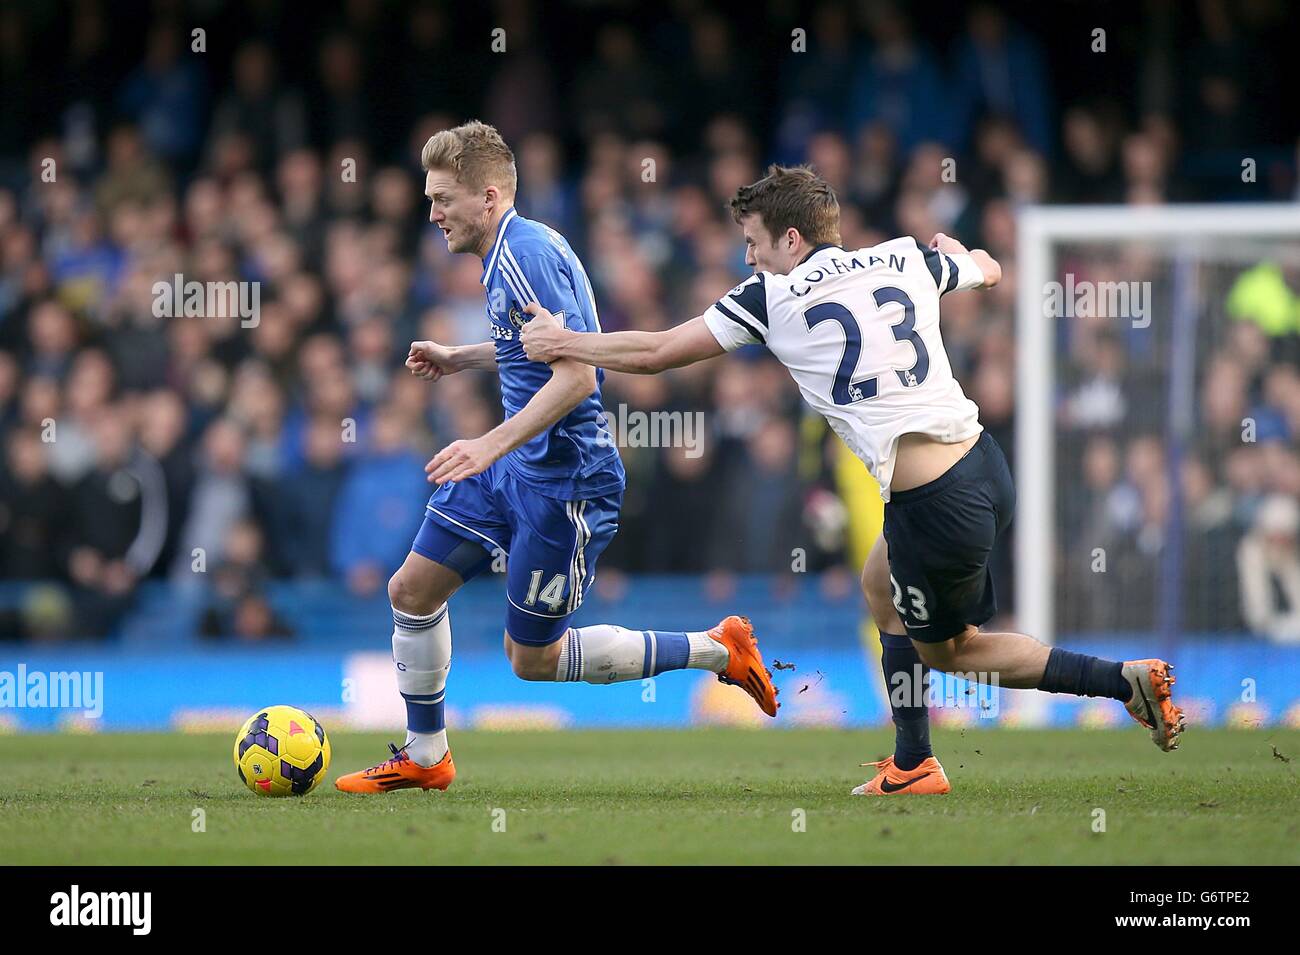 Calcio - Barclays Premier League - Chelsea v Everton - Stamford Bridge. Seamus Coleman di Everton e Andre Schurrle di Chelsea (a sinistra) lottano per la palla Foto Stock